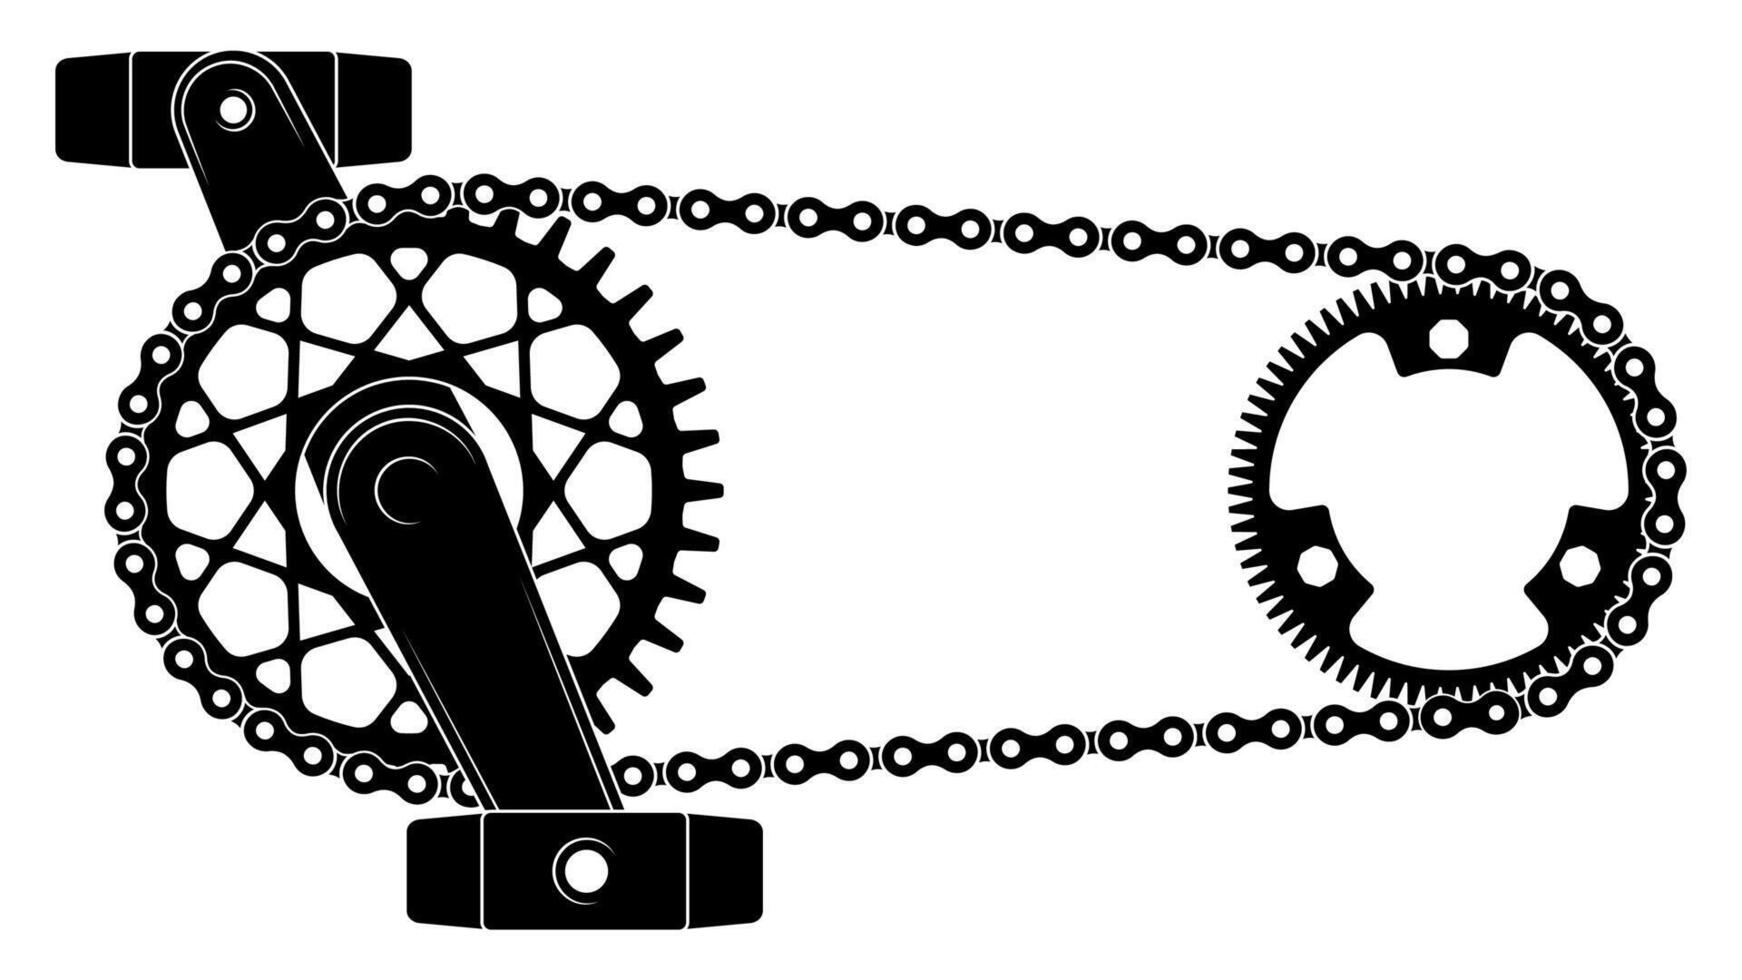 fiets keten drijfveer. uitrusting mechanisme met tandwiel wiel en fiets rit riemen, stedelijk vervoer pedaal schakelen mechanisme. vector illustratie